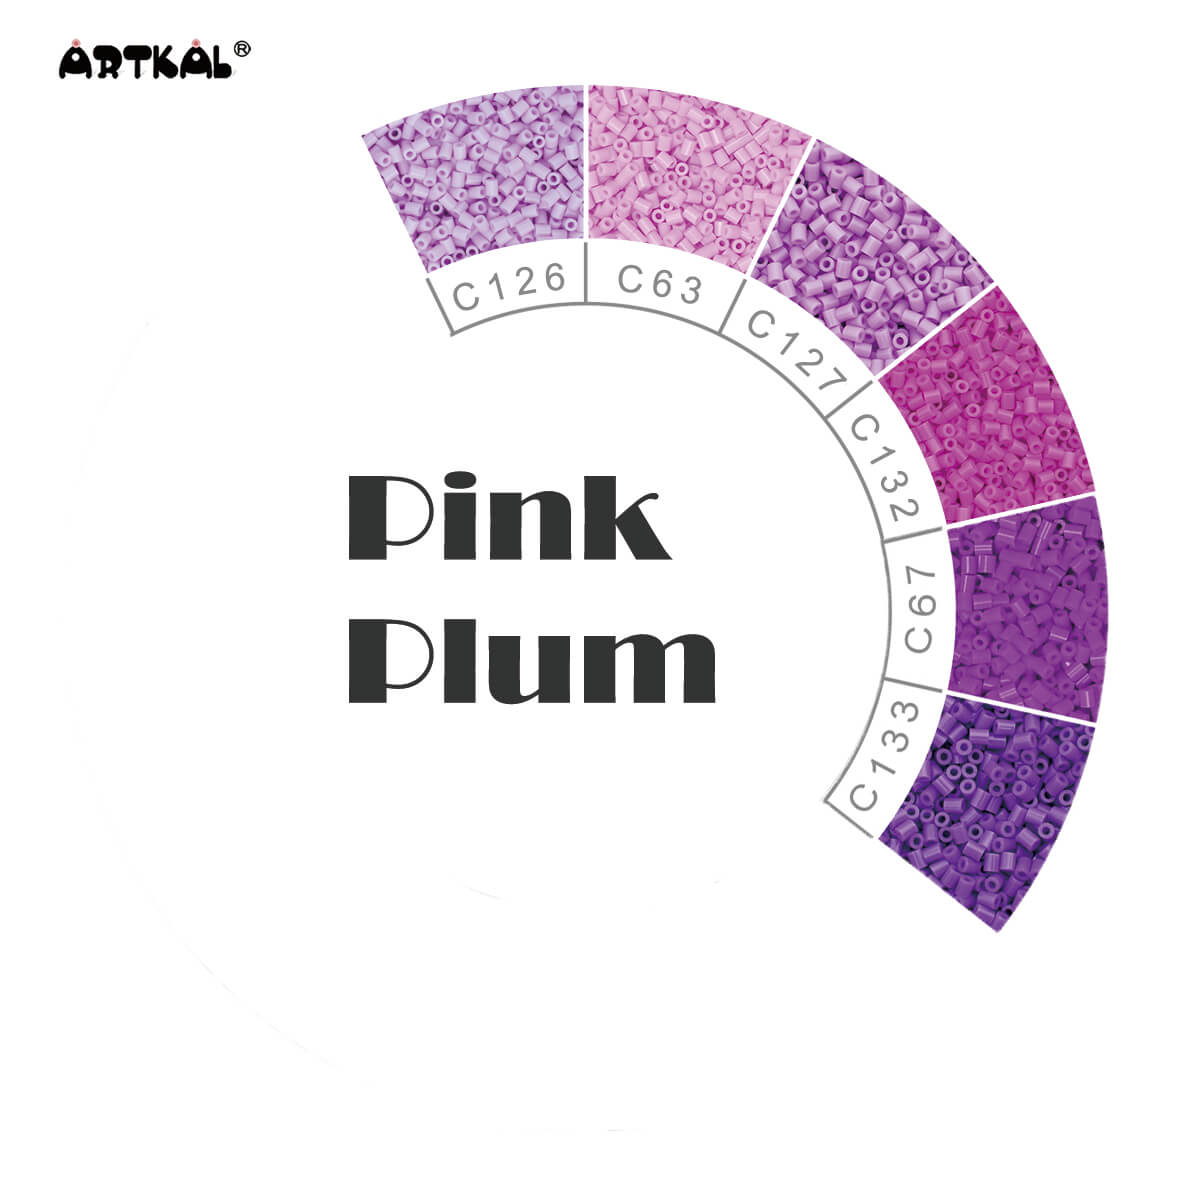 Coirníní Plum-Mion Pink C 2000 coirníní Pacáiste Aonair